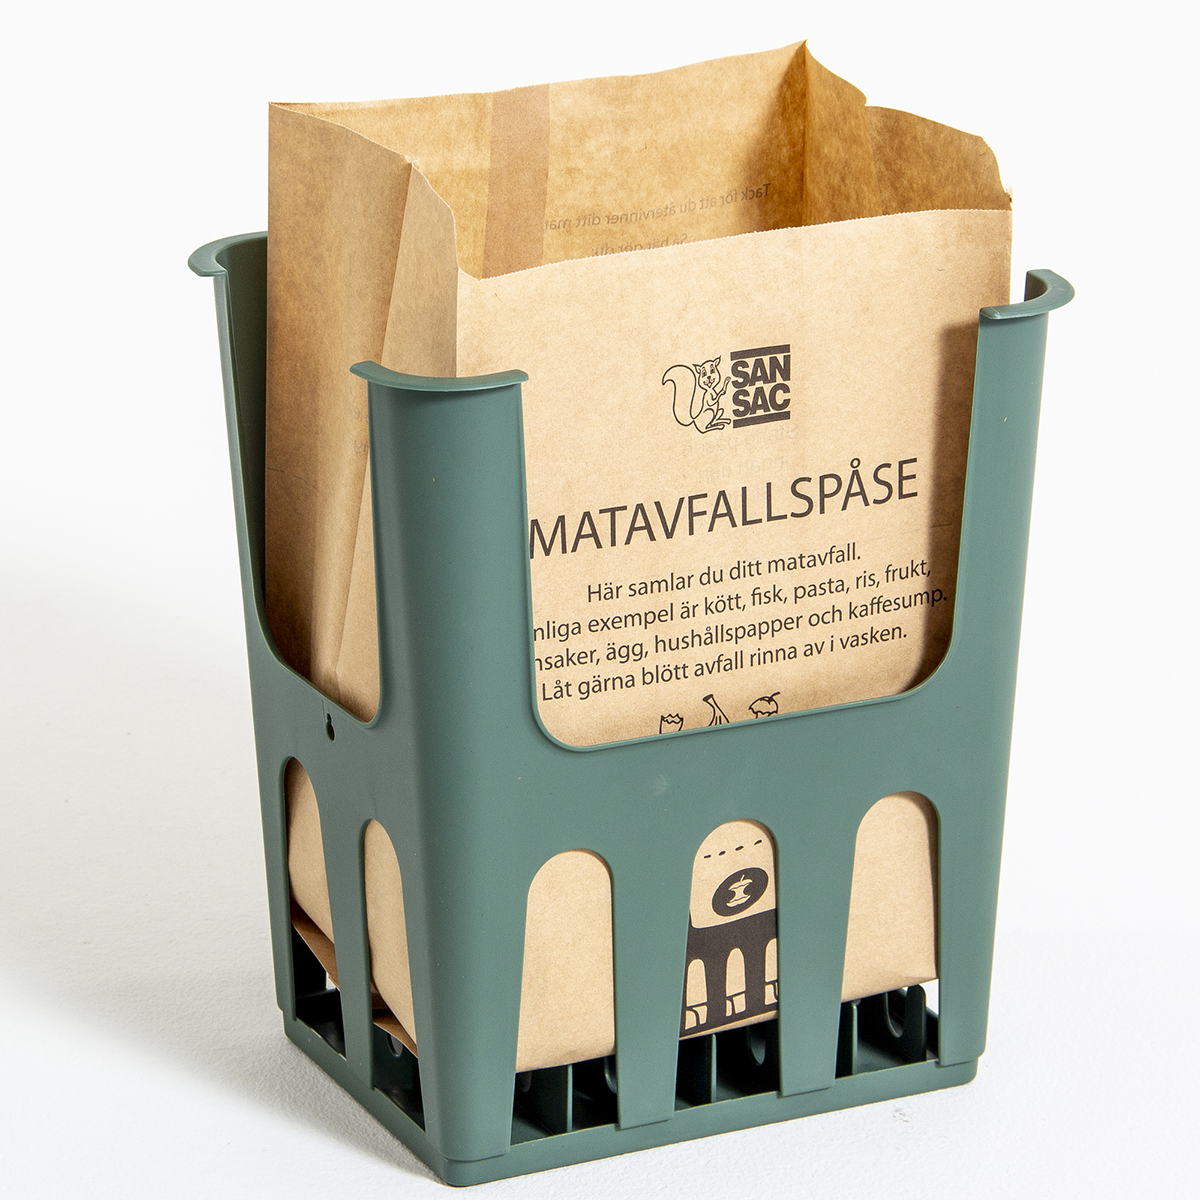 Grön plasthållare med en brun papperspåse som används för matavfallsinsamling